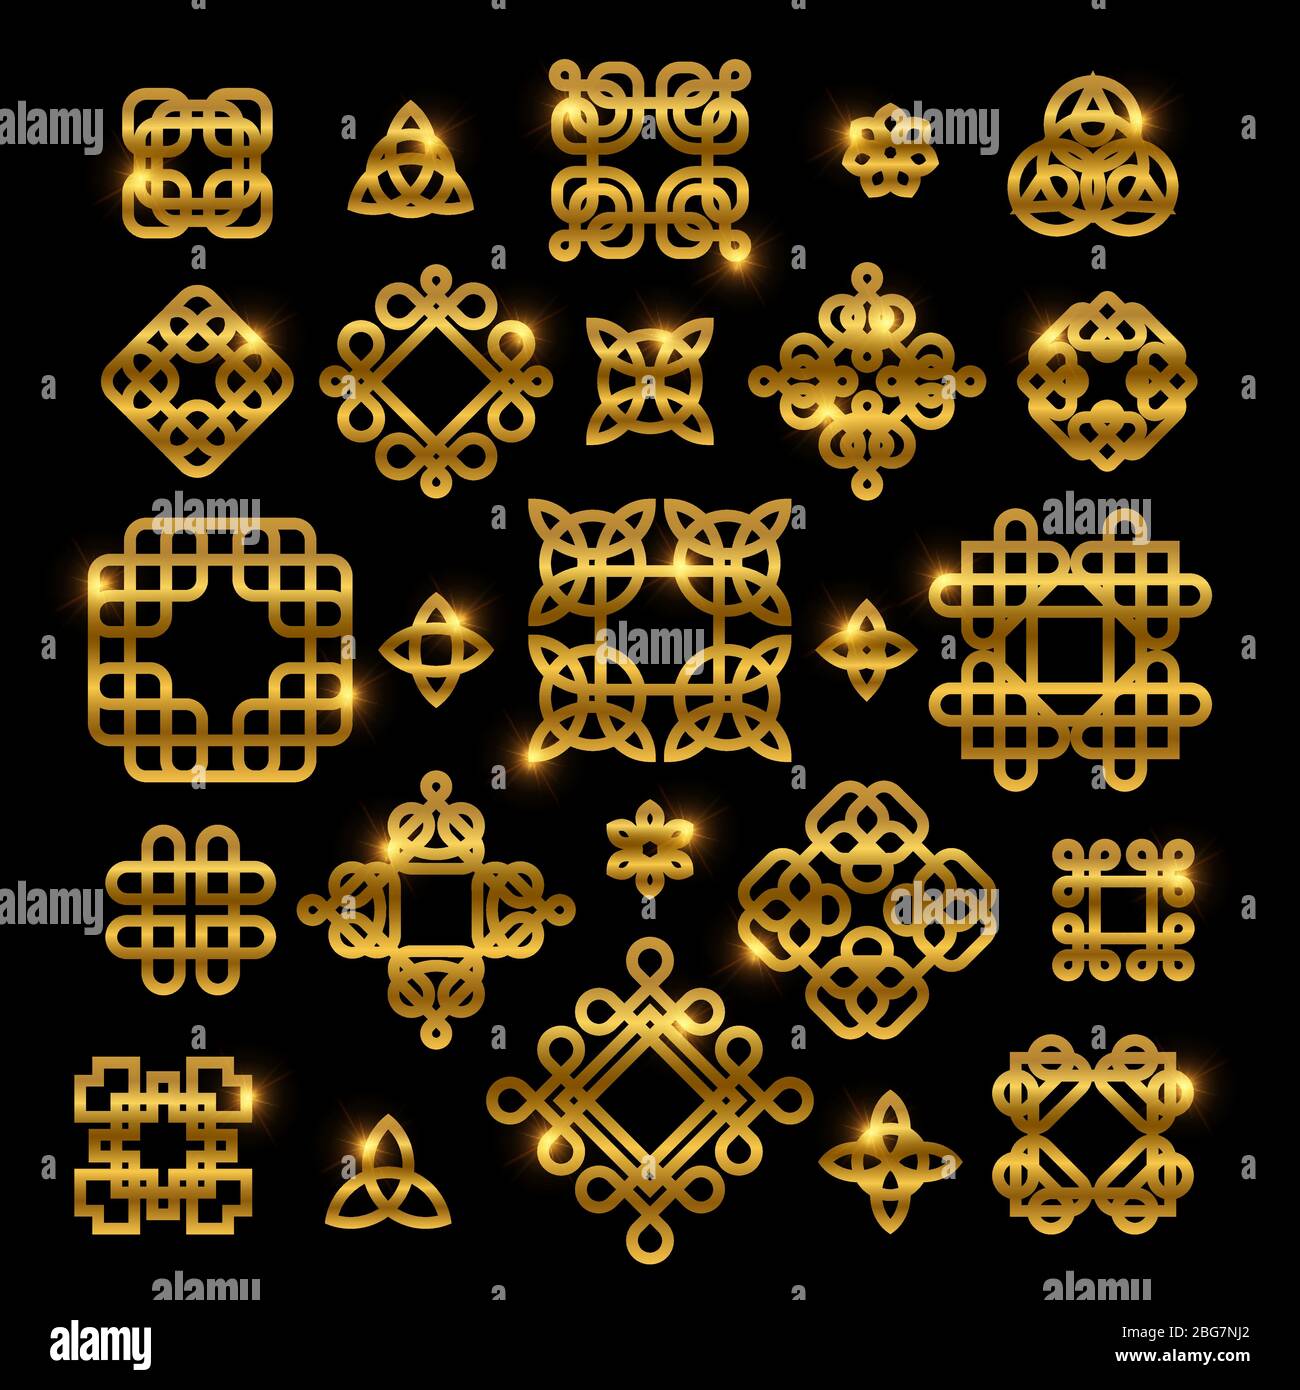 Goldene keltische Knoten mit glänzenden Elementen auf schwarzem Hintergrund isoliert. Vektor Knoten Icon Sammlung Ornament für Tattoo Muster, gälische Dekoration illu Stock Vektor